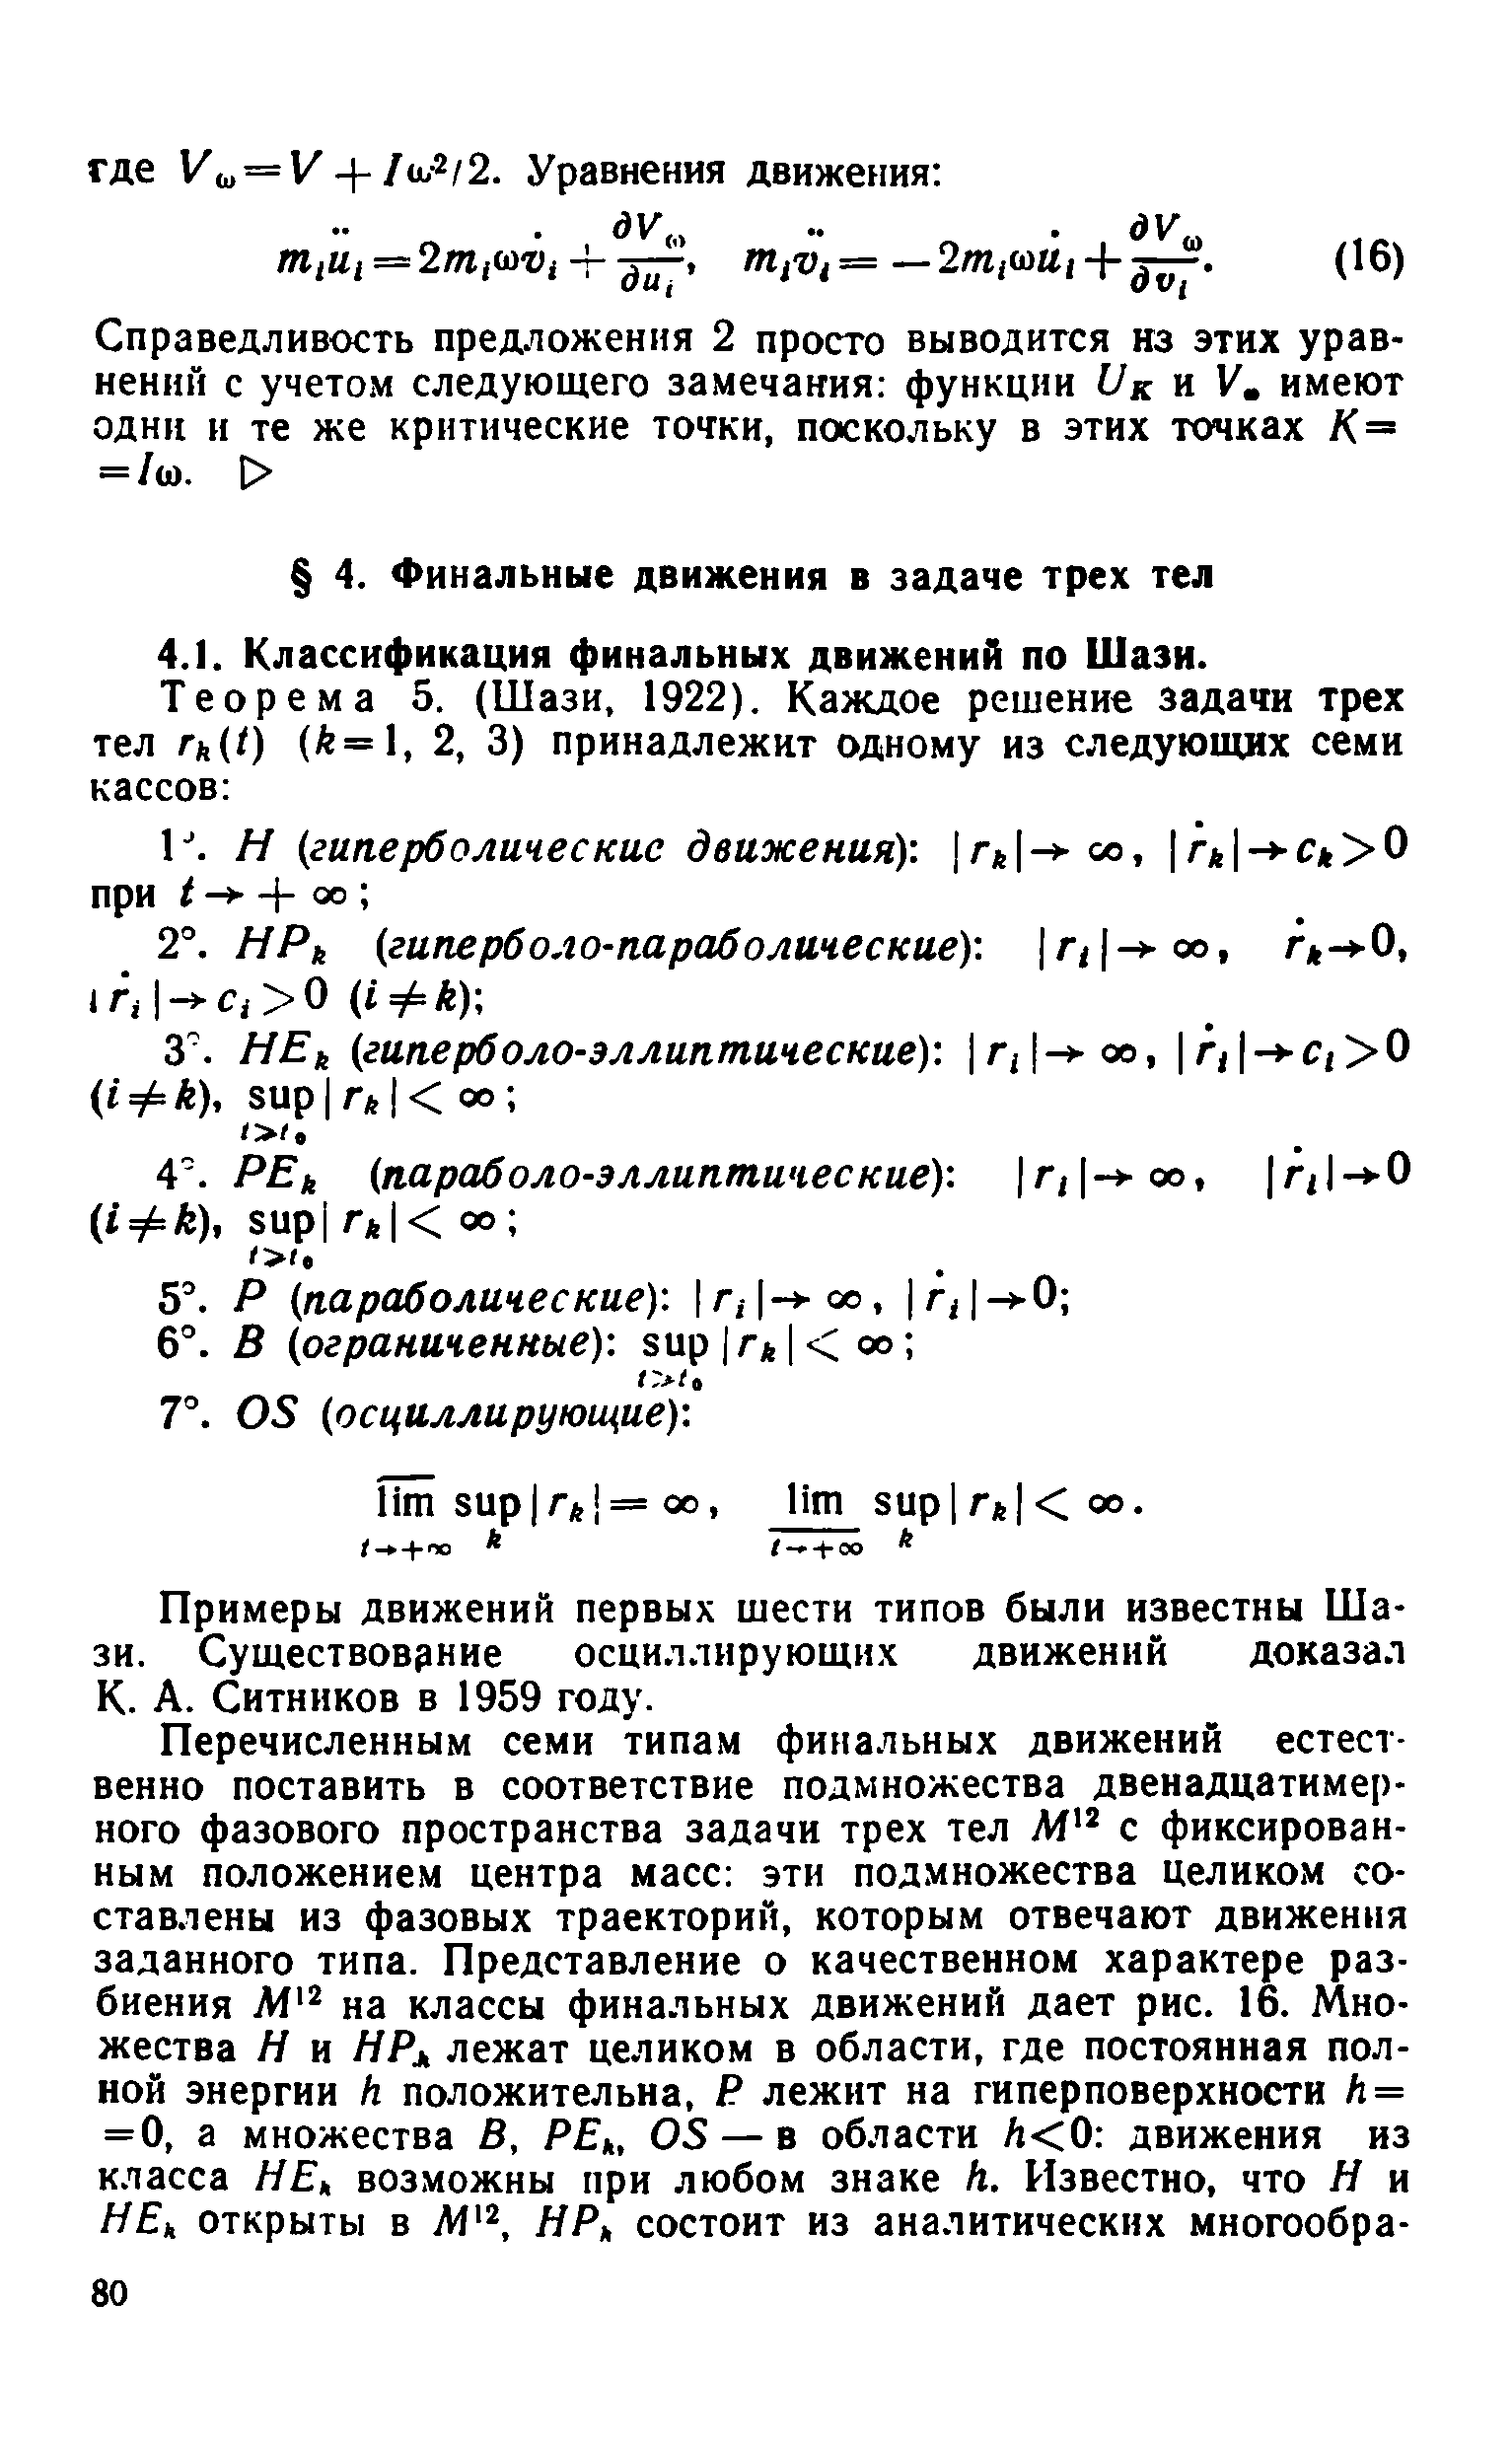 Примеры движений первых шести типов были известны Шази. Существовэние осциллирующих движений доказал К. А. Ситников в 1959 году.
